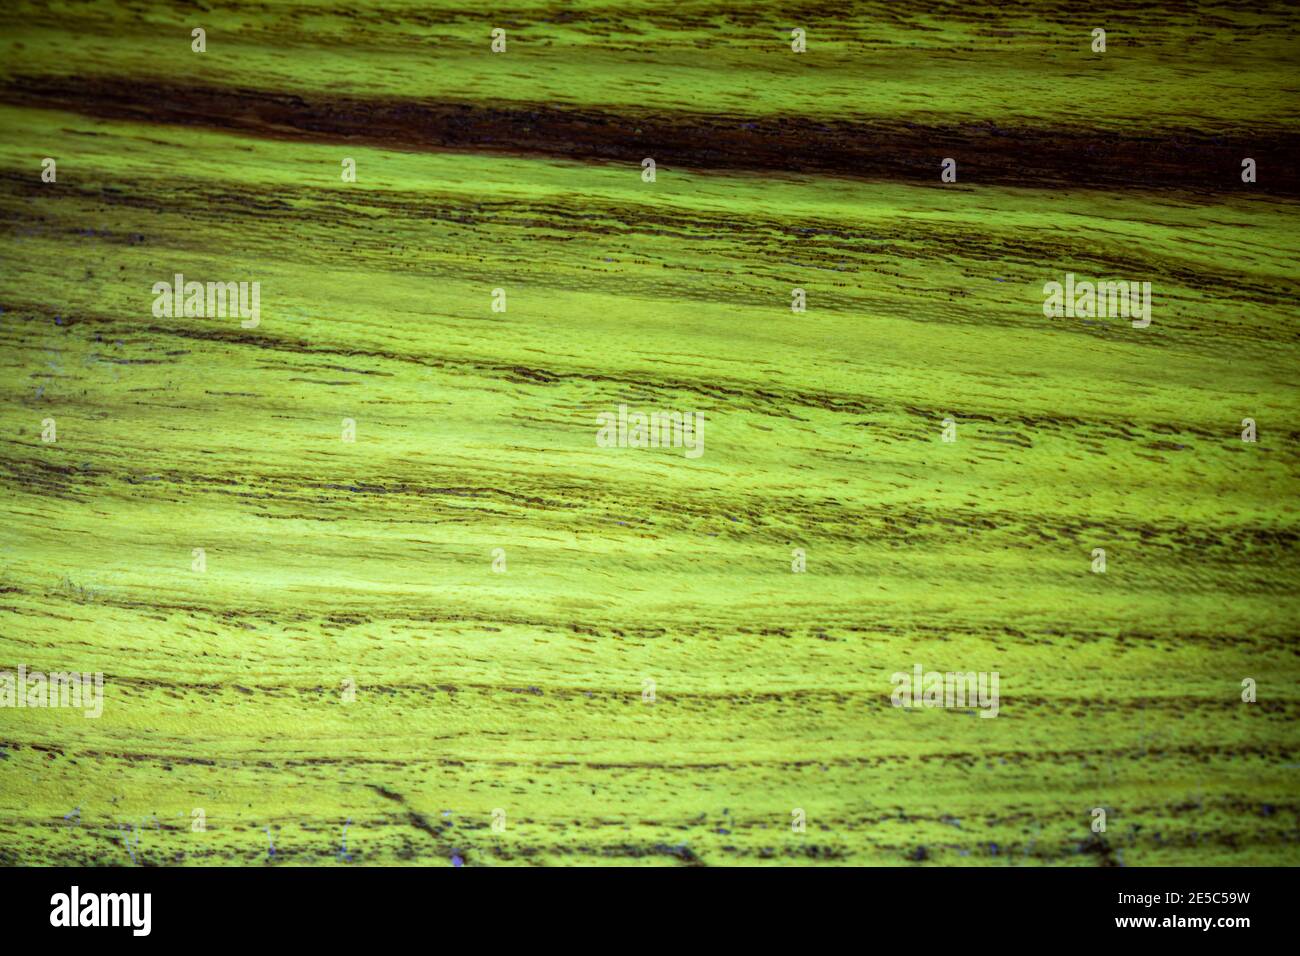 Il grano di legno di locusto nero sotto la luce UV, che mostra la caratteristica fluorescenza verde. Foto Stock